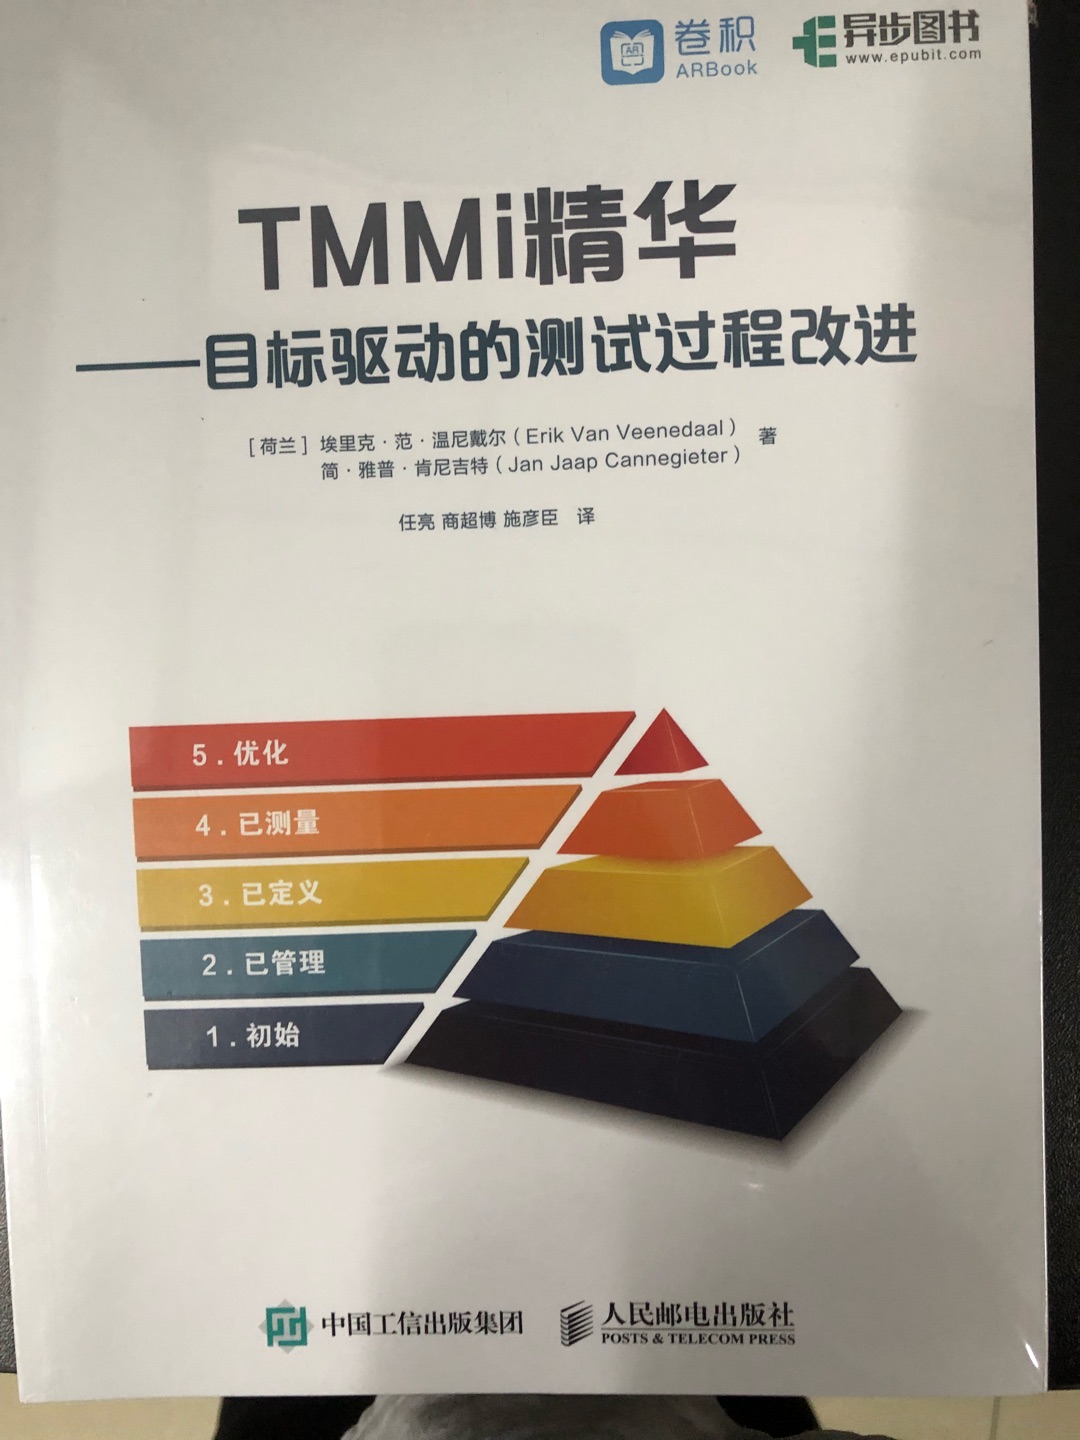 TMMI协会推荐的书籍，公司领导给员工购买的，让员工在知识，技能方面有更深的了解和学习。